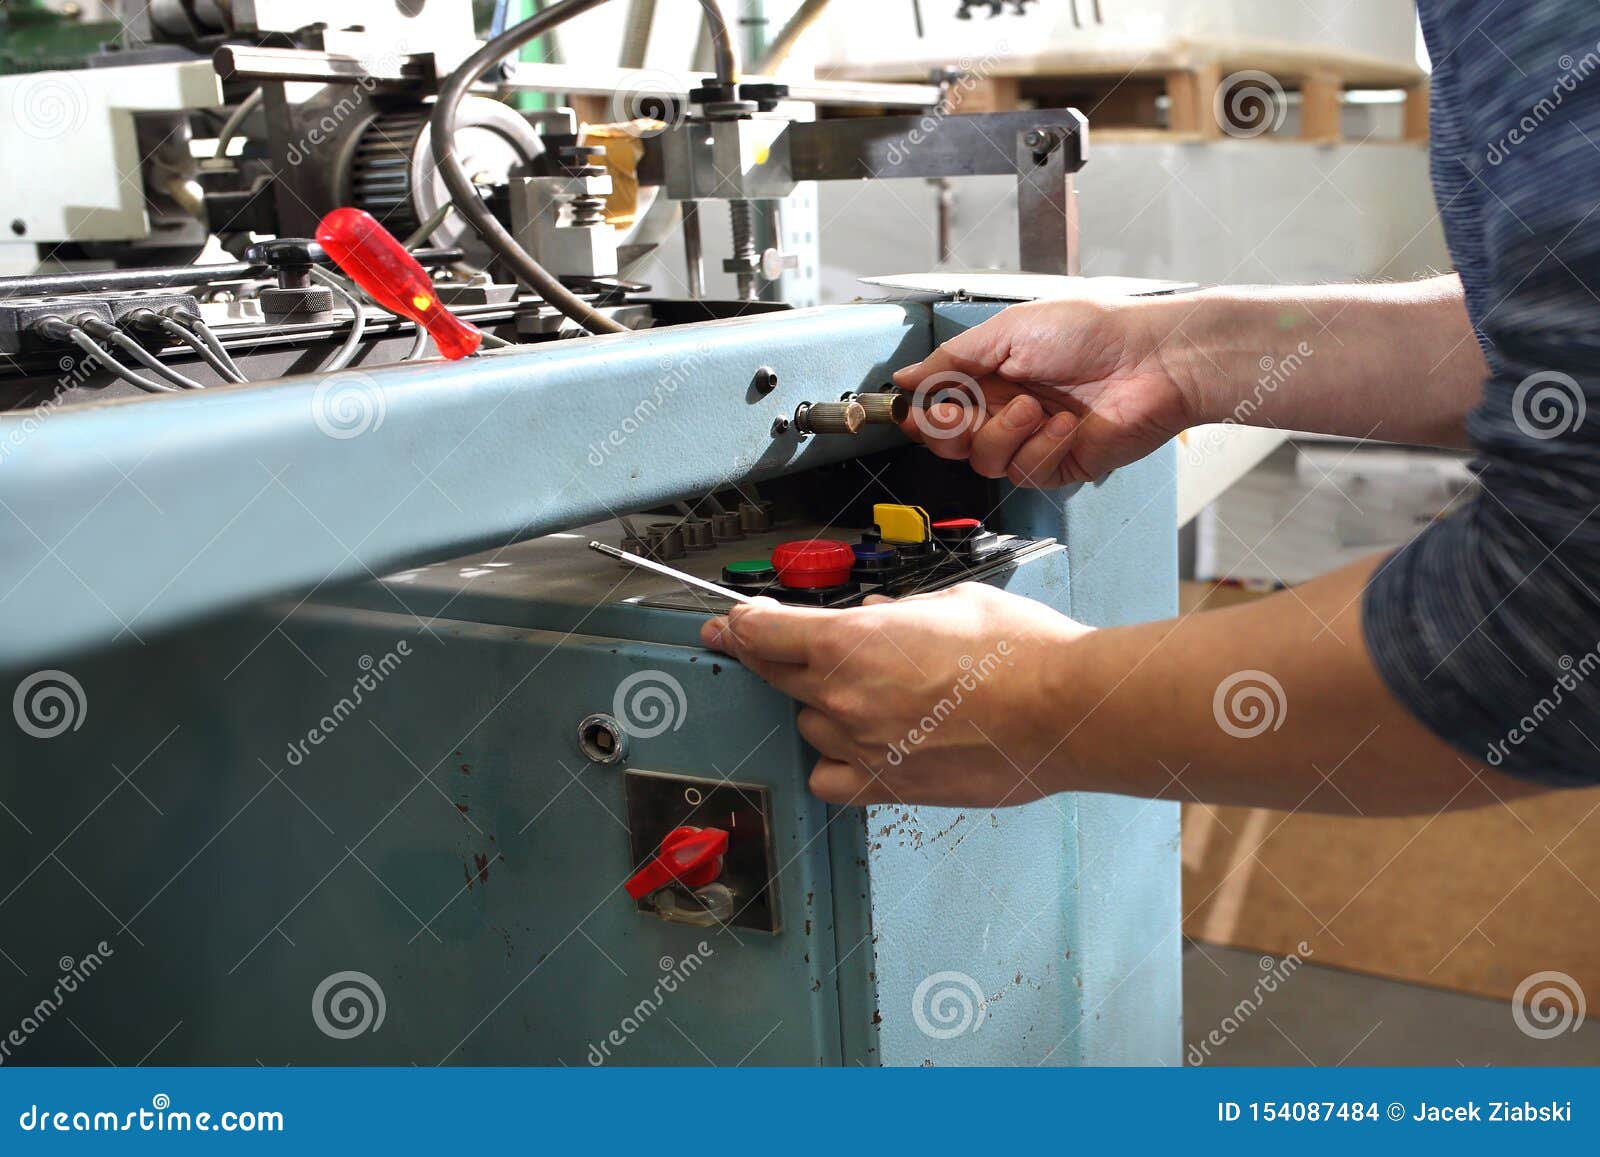 Repair the Printing Machine. Machine Service, Maintenance the Machine Stock Photo - Image of maintenance, mechanic: 154087484